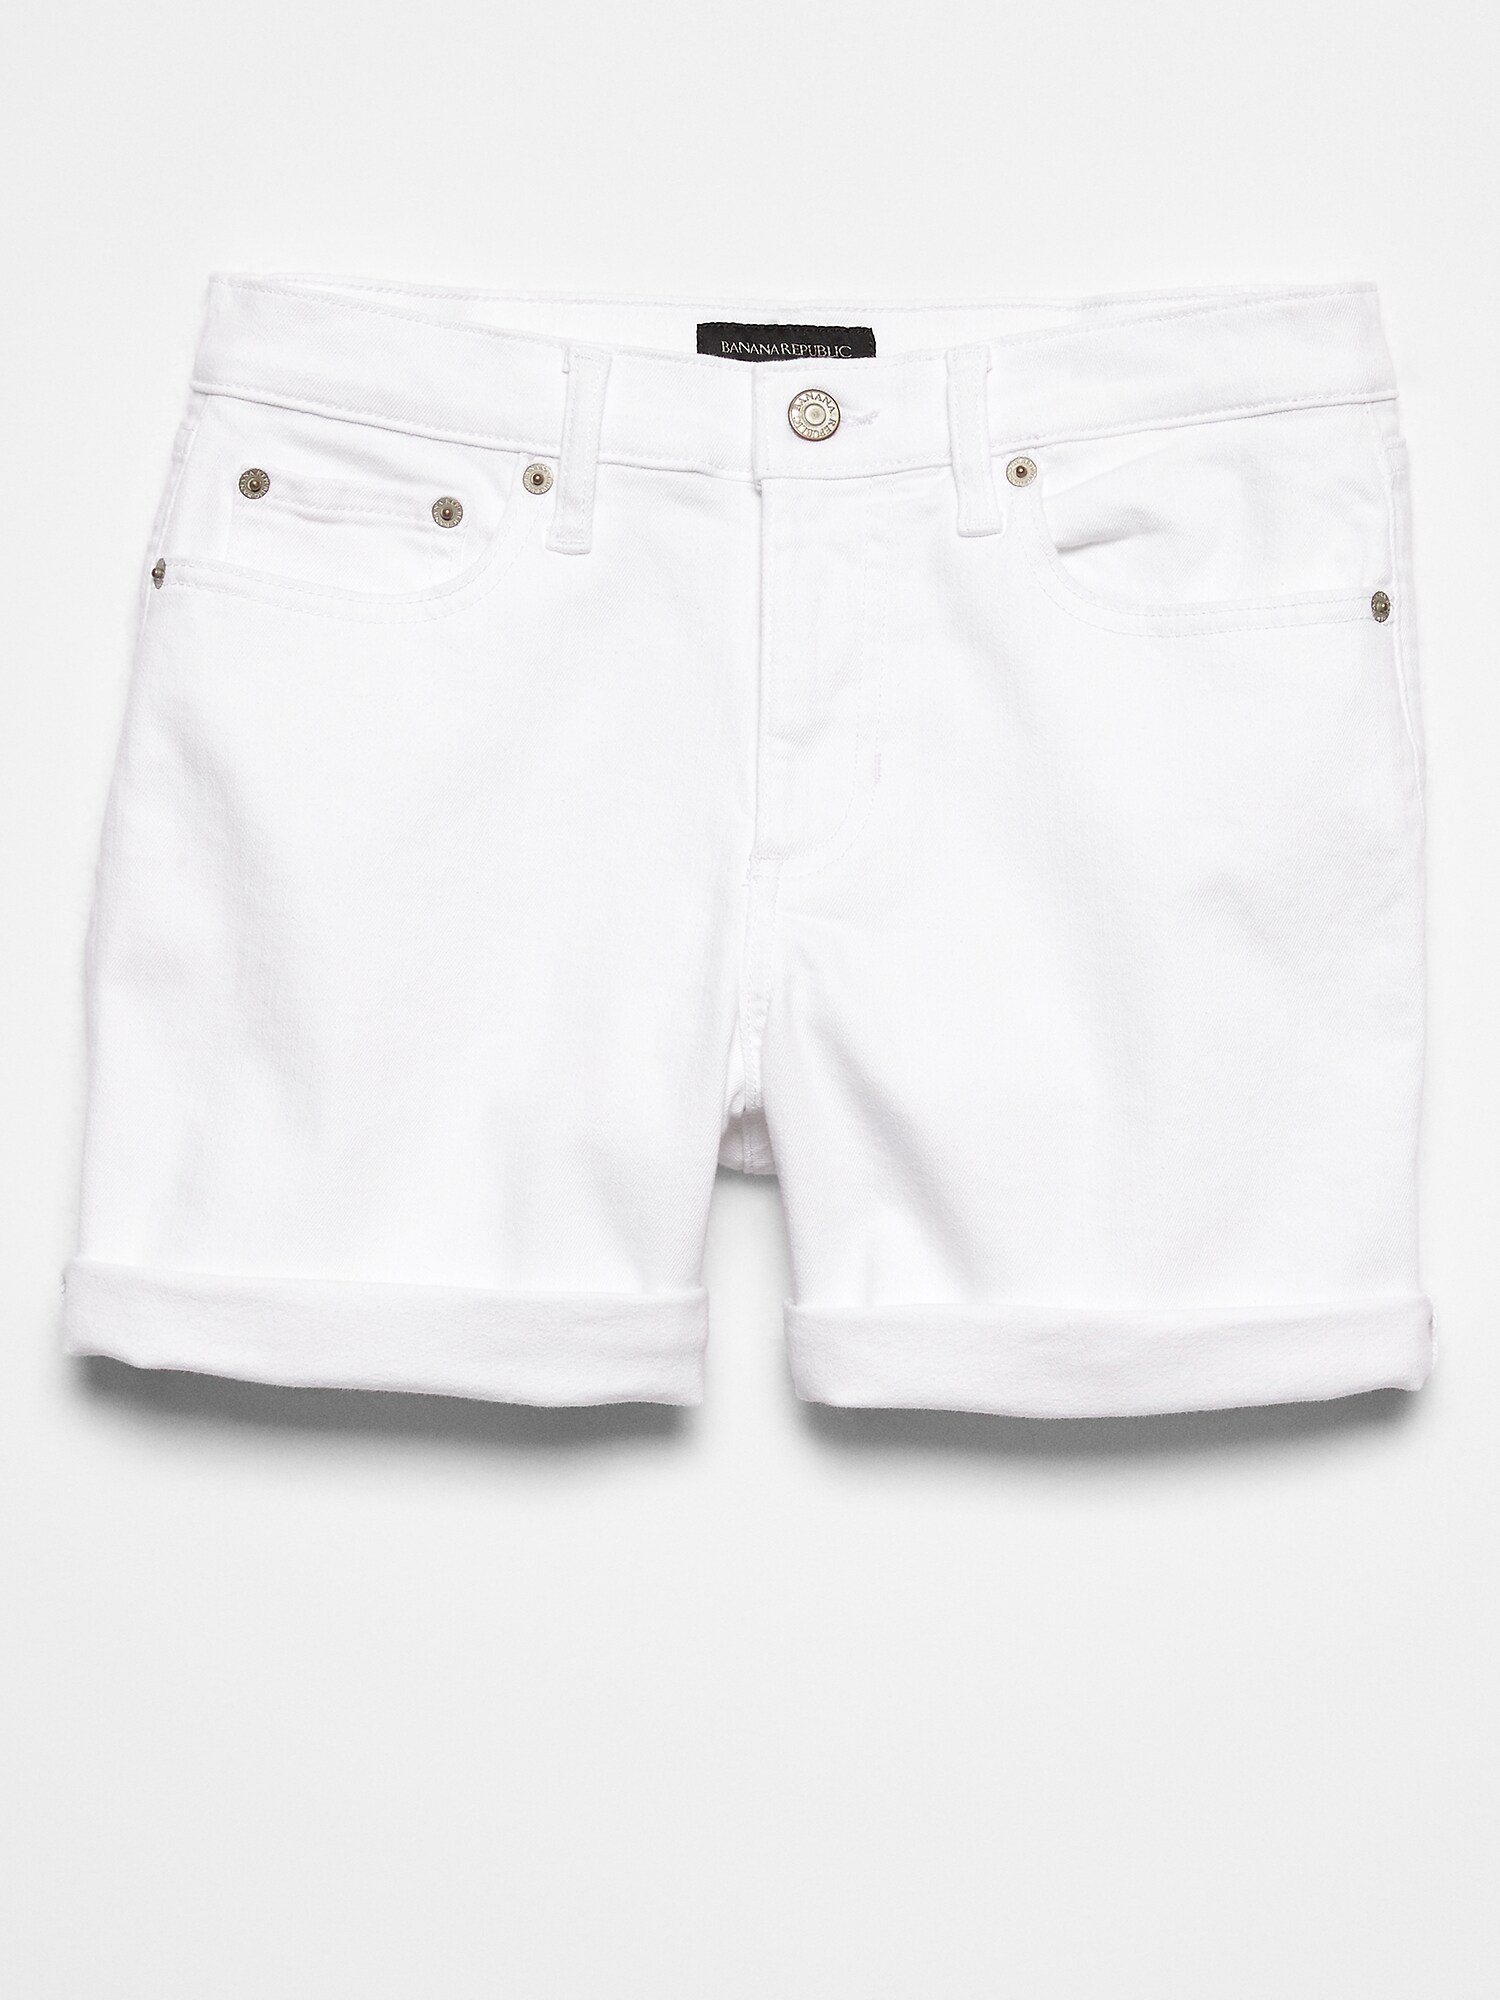 Petite White Denim Roll-Cuff Shorts - 4 inch inseam